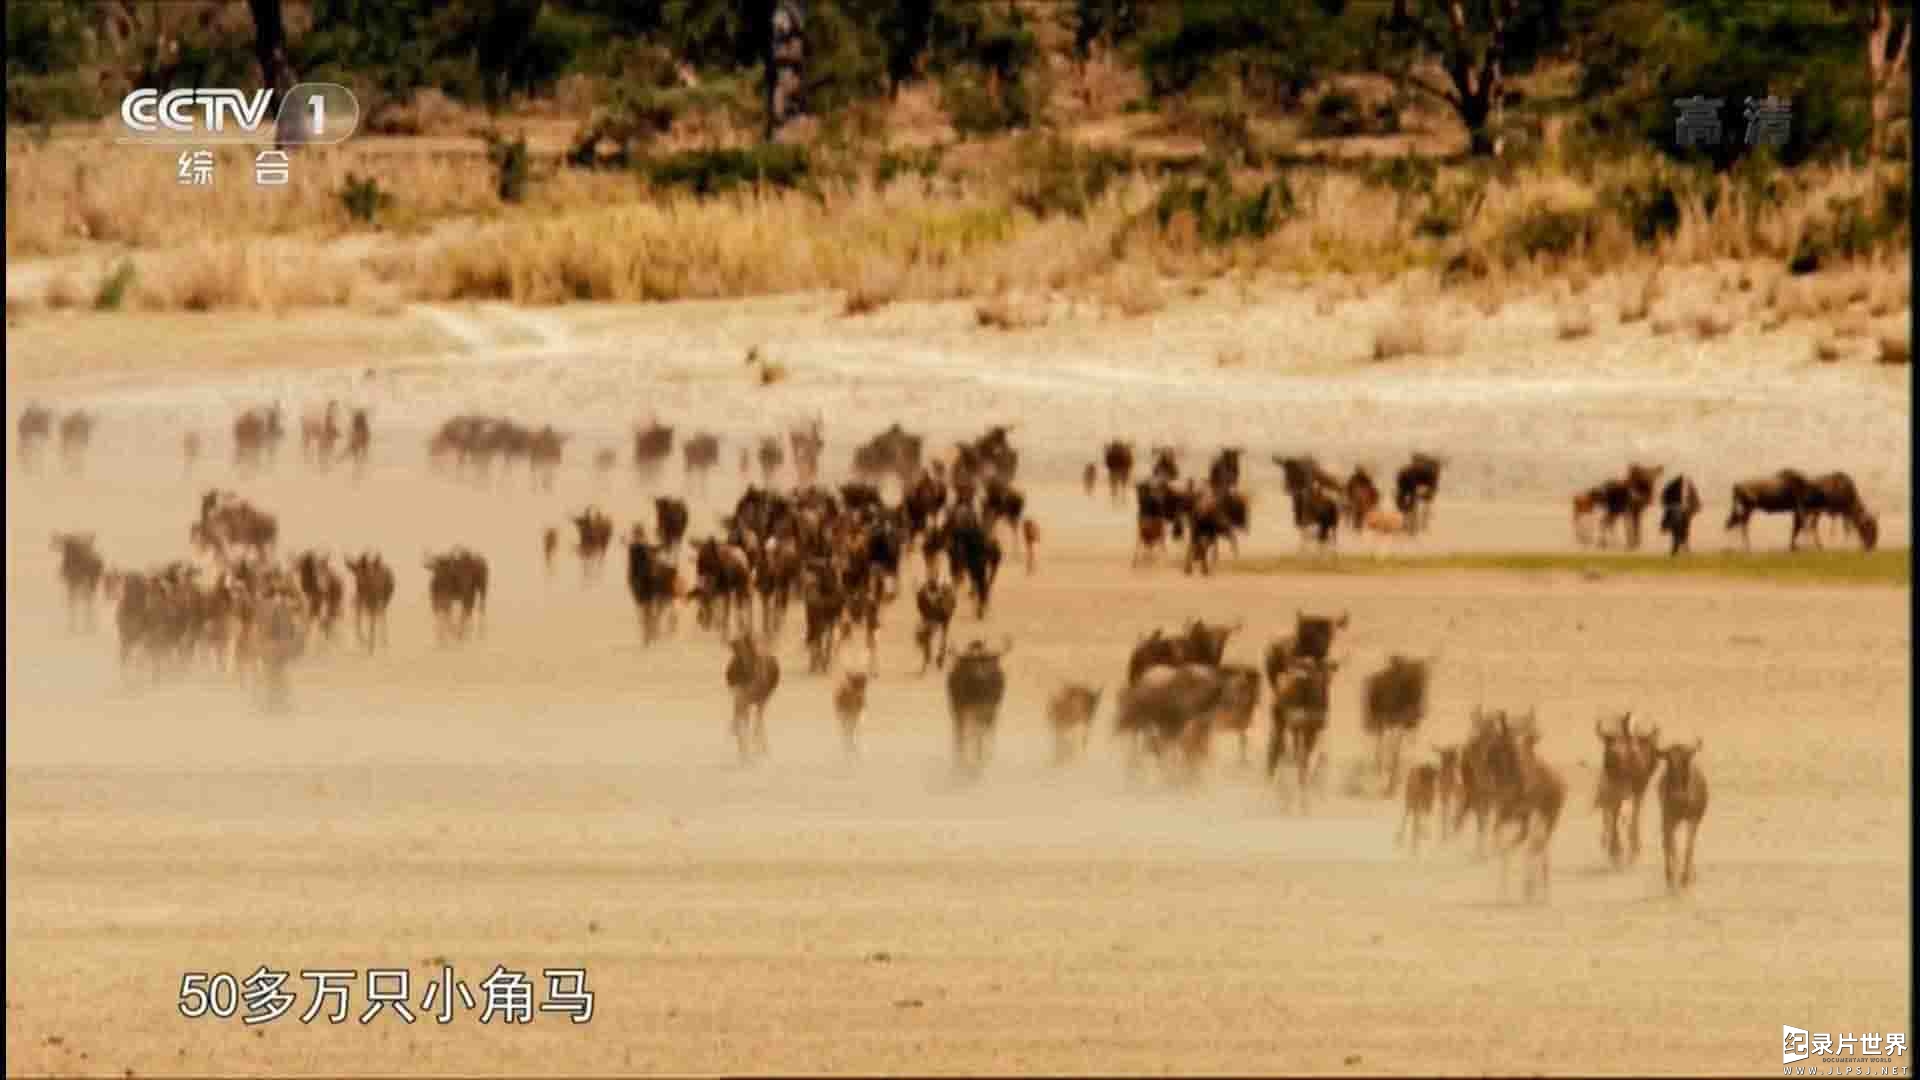 央视纪录片《塞伦盖蒂大草原 The Great Serengeti》全1集